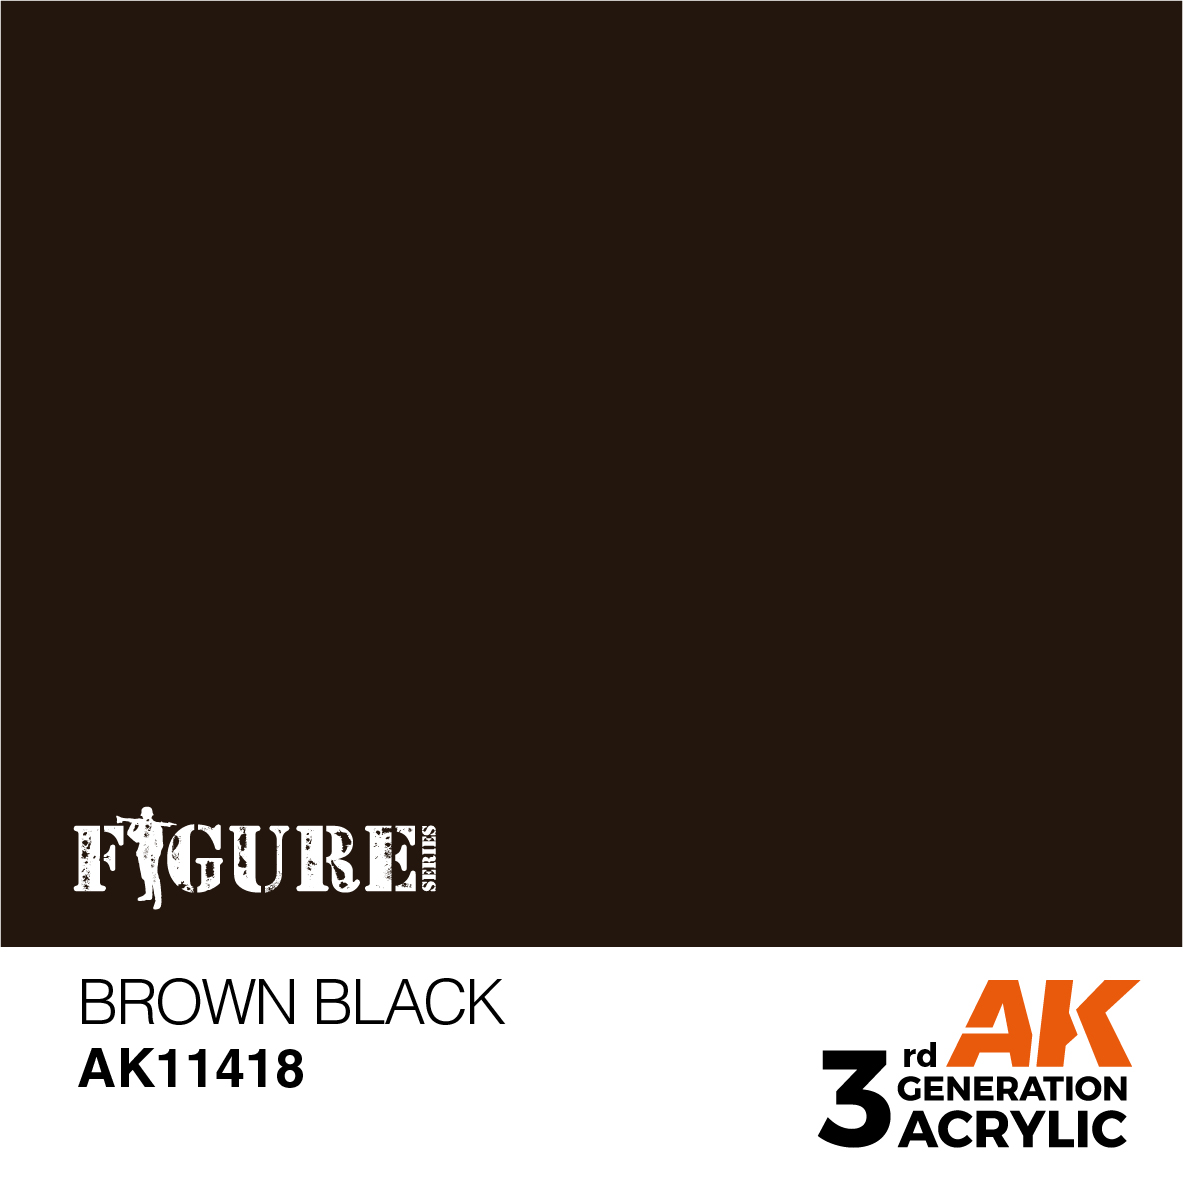 Brown Black – Figures